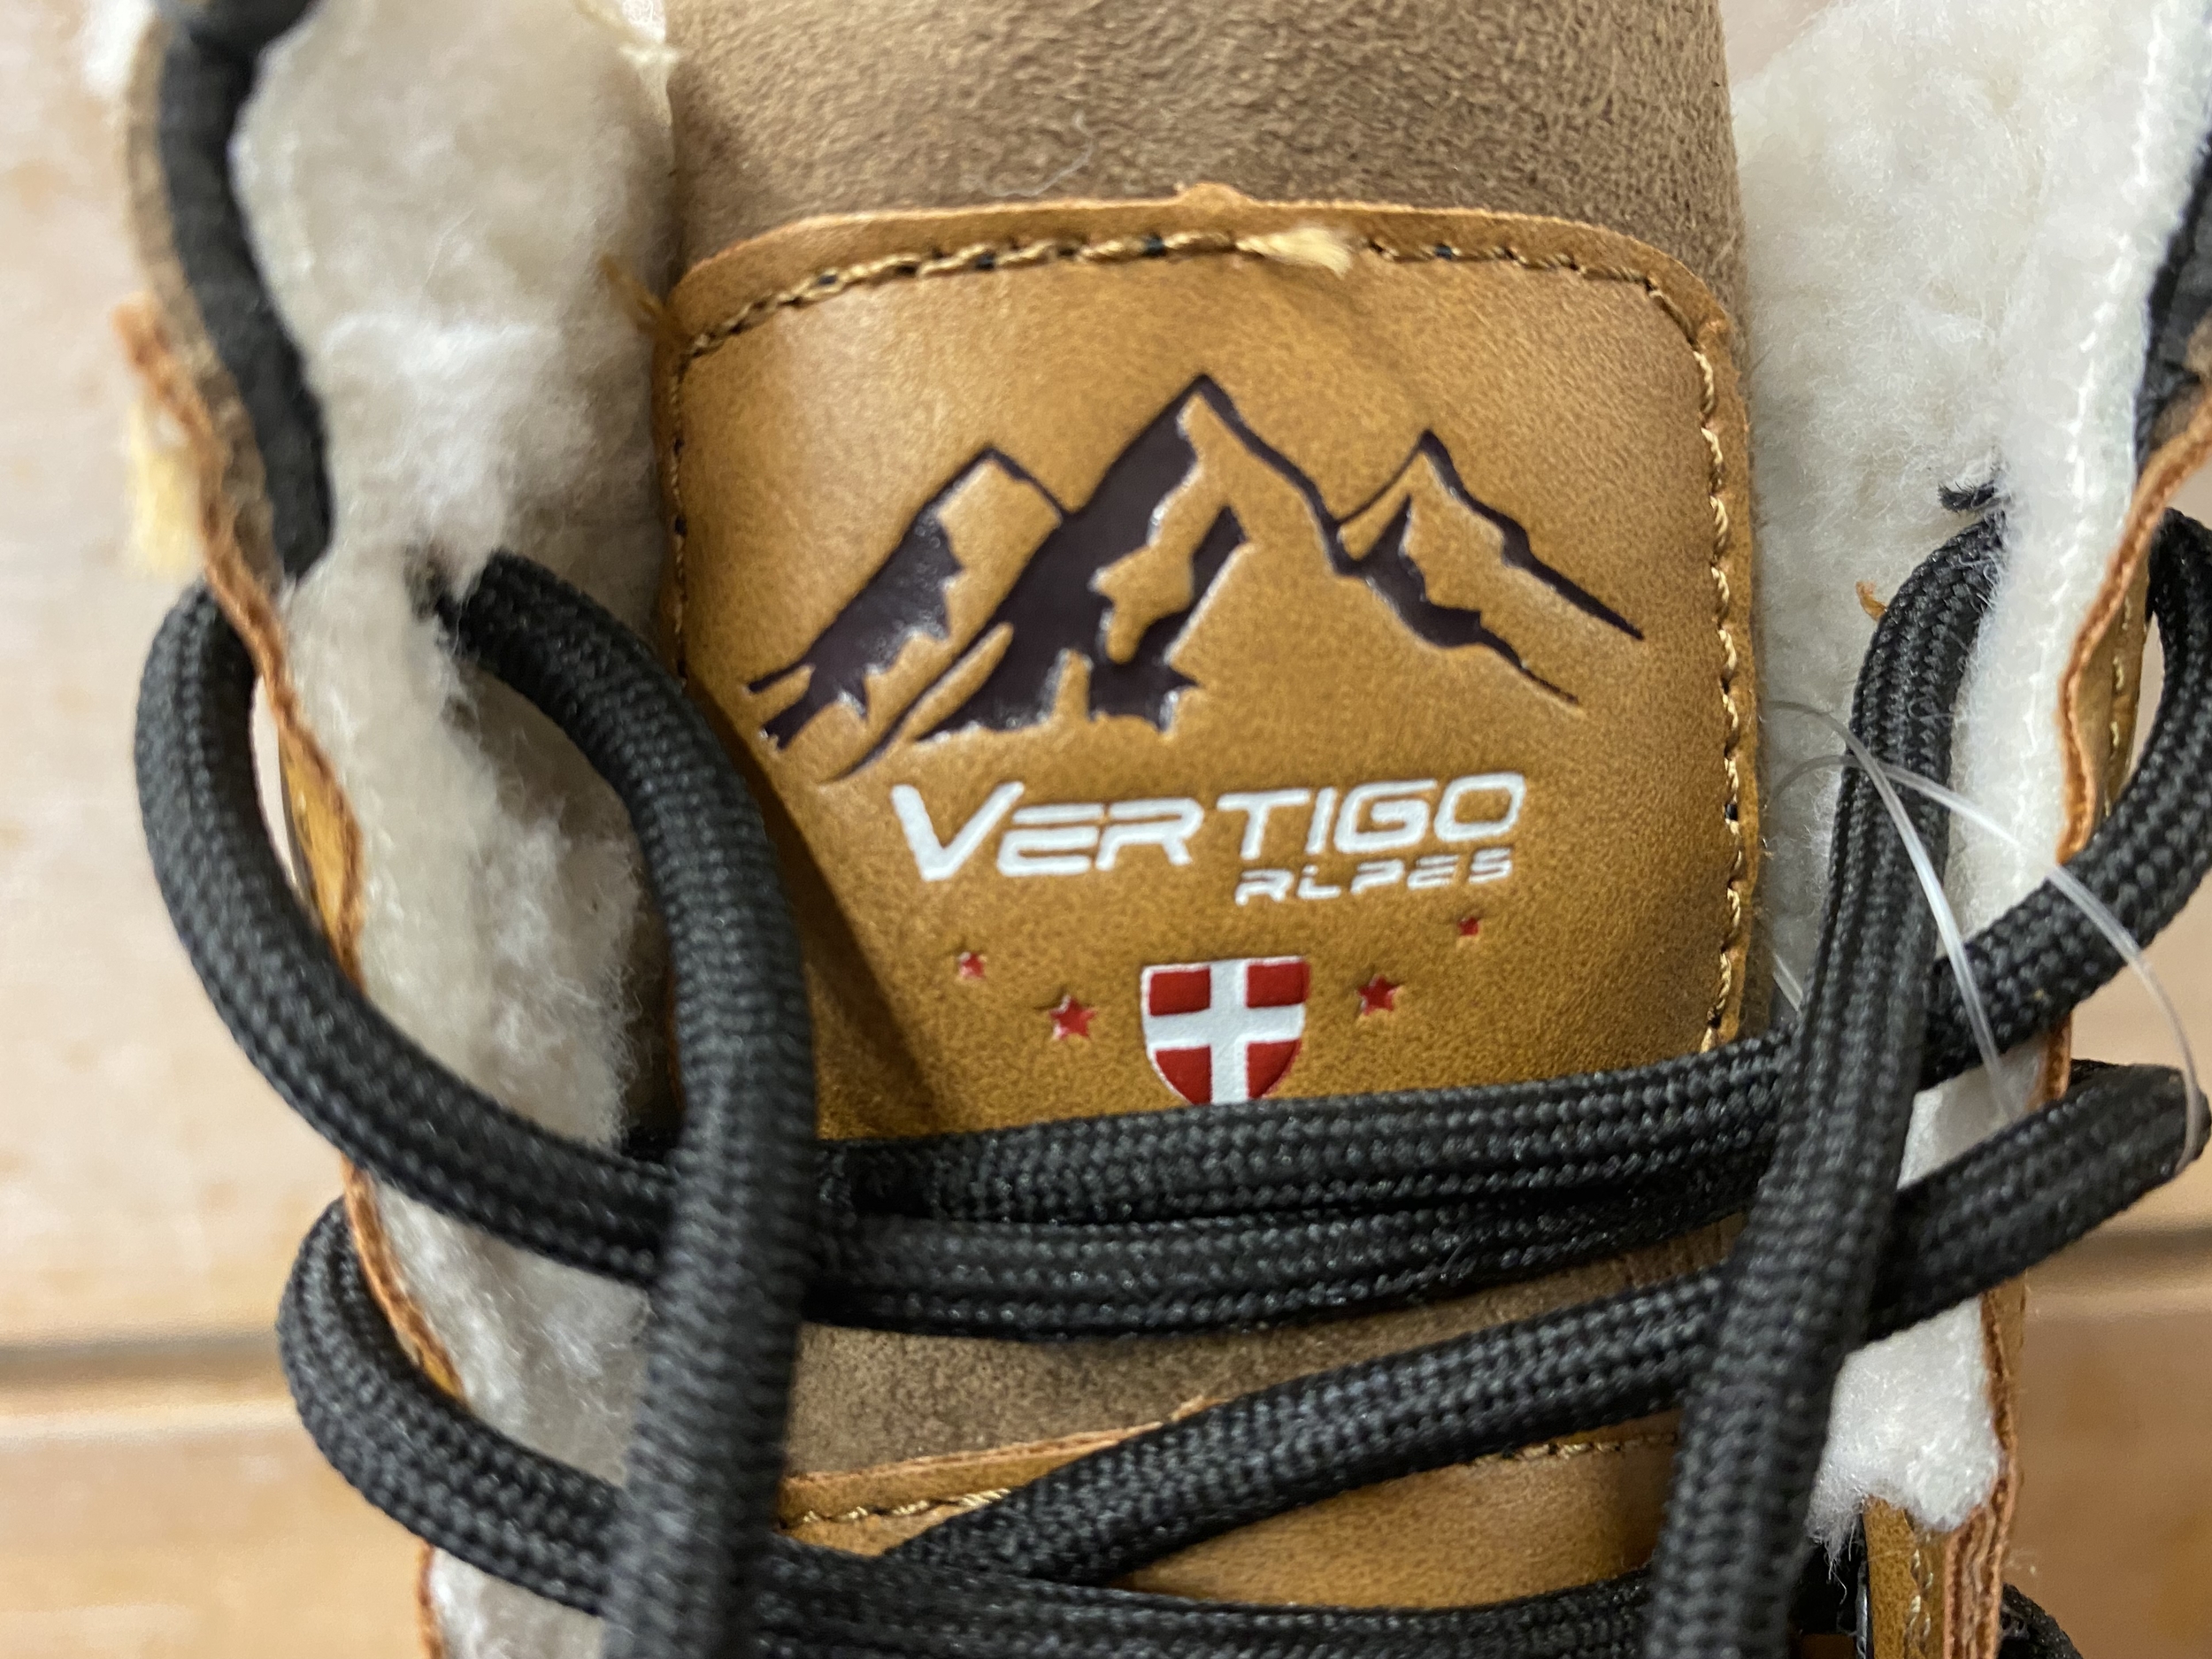 Botte-neige-après ski-homme-alpes vertigo-gotha-camel-logo